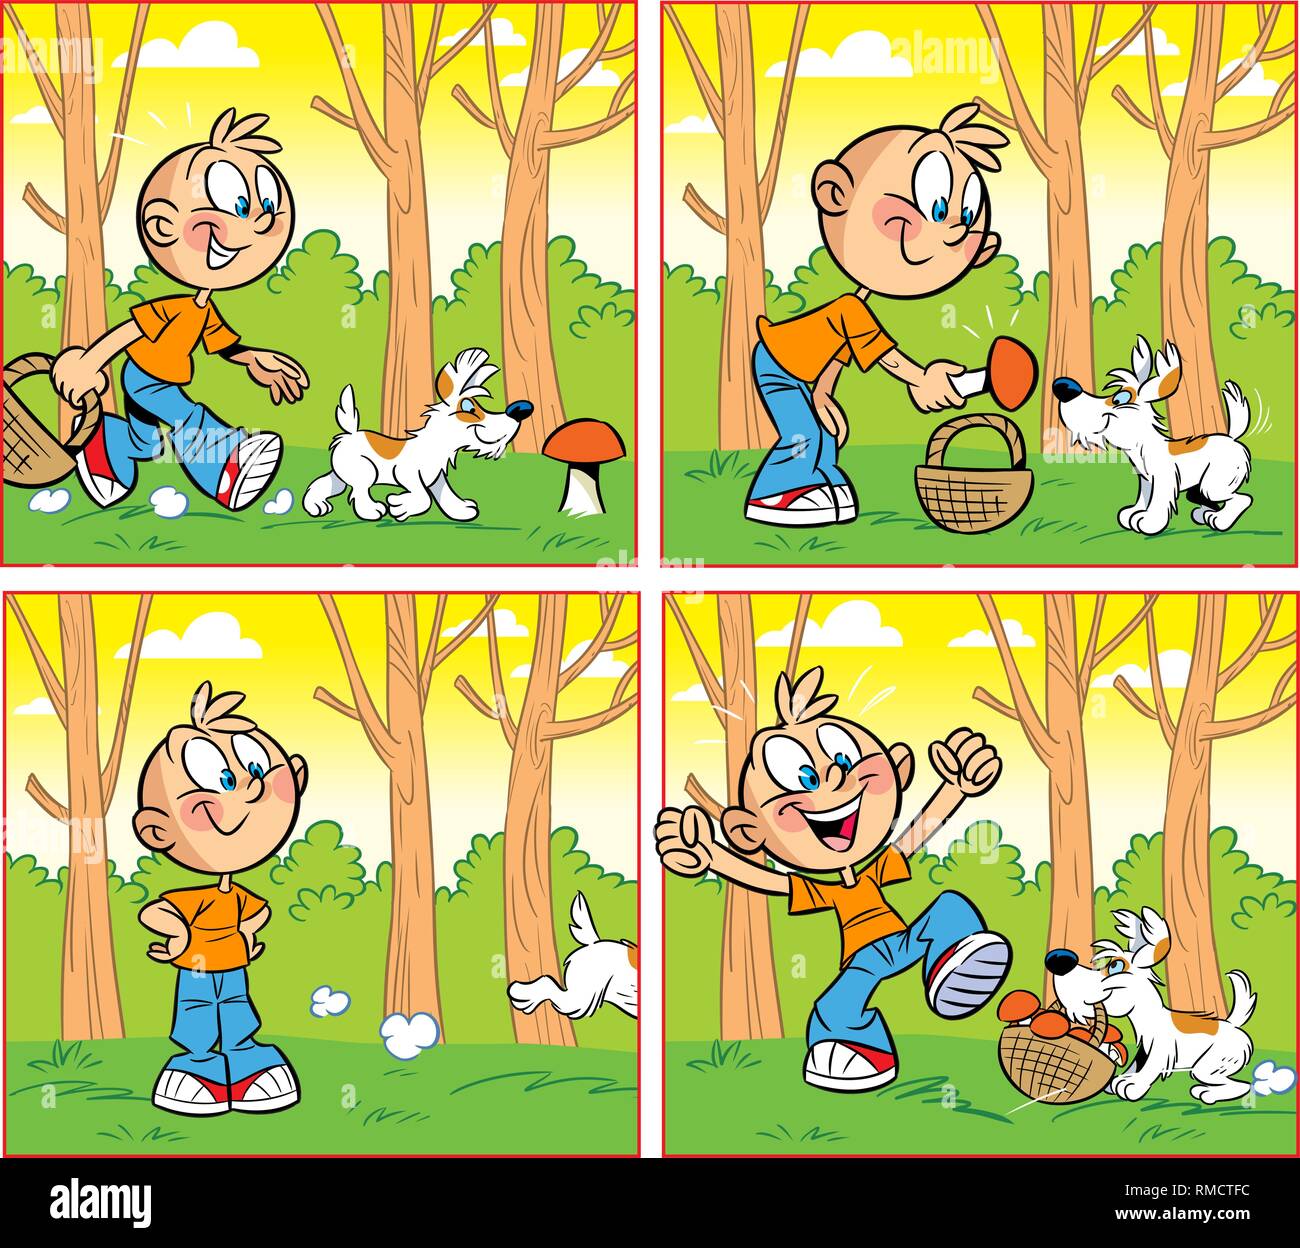 L'illustration montre un dessin animé garçon avec un chien qui recueille des champignons dans la forêt. L'illustration est faite en style bande dessinée Illustration de Vecteur